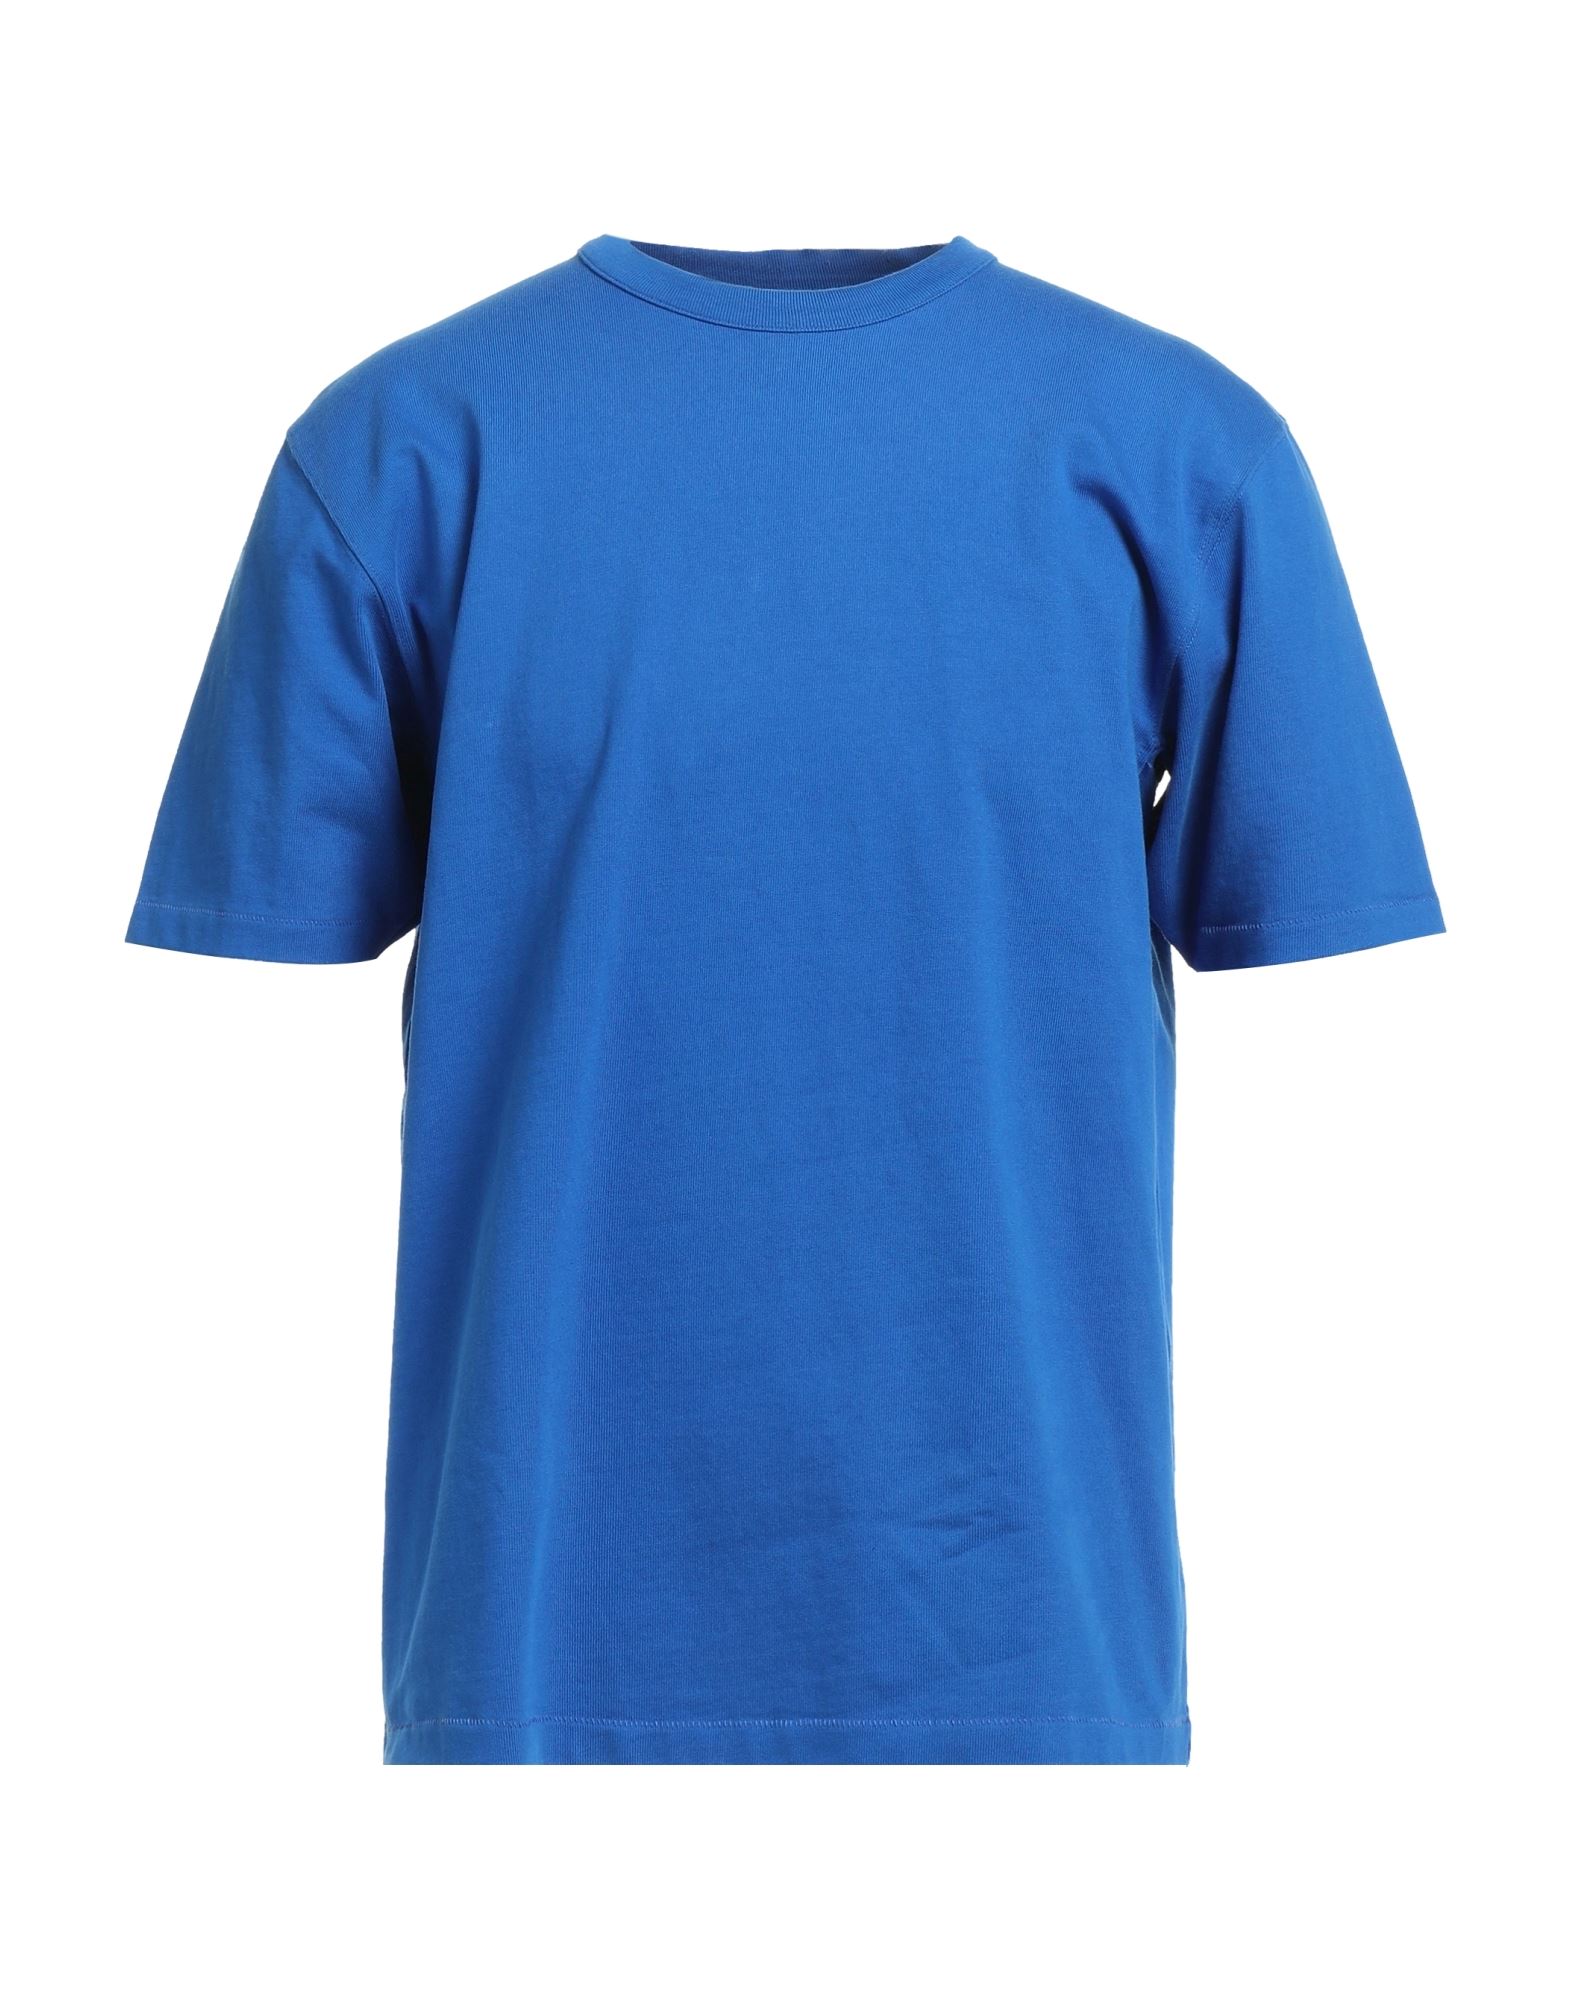 Heron Preston X Calvin Klein T-shirts In Bright Blue